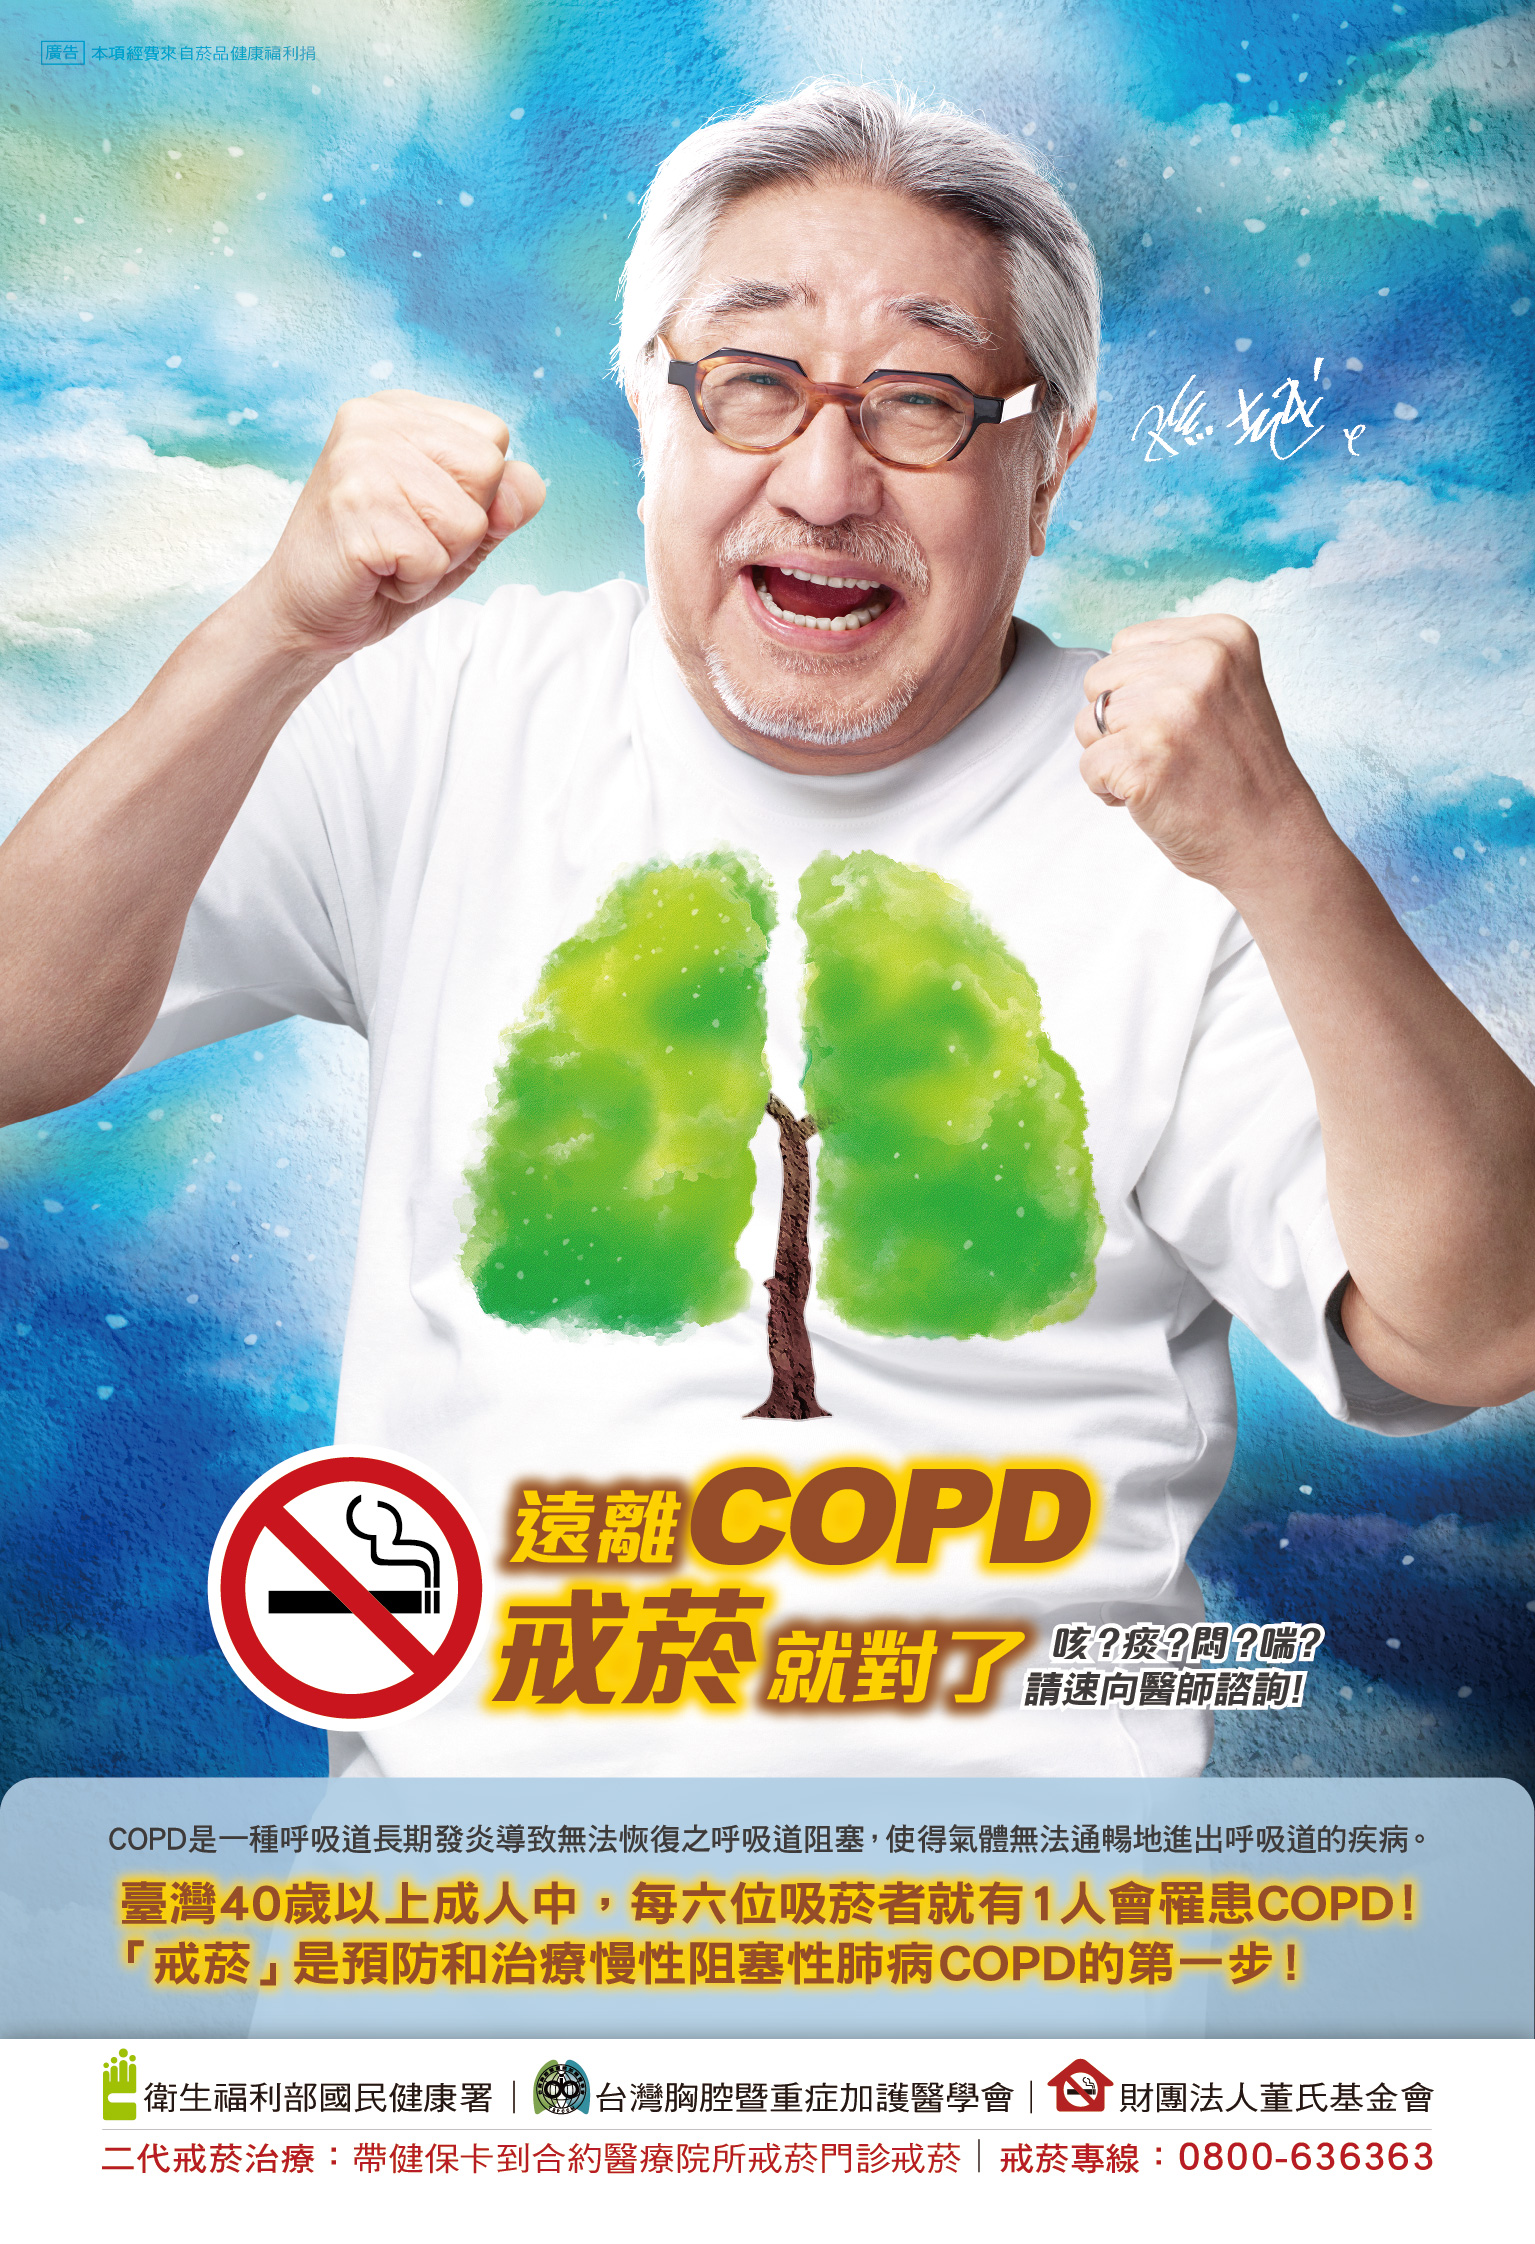 遠離COPD戒菸就對了 (單張)文章照片